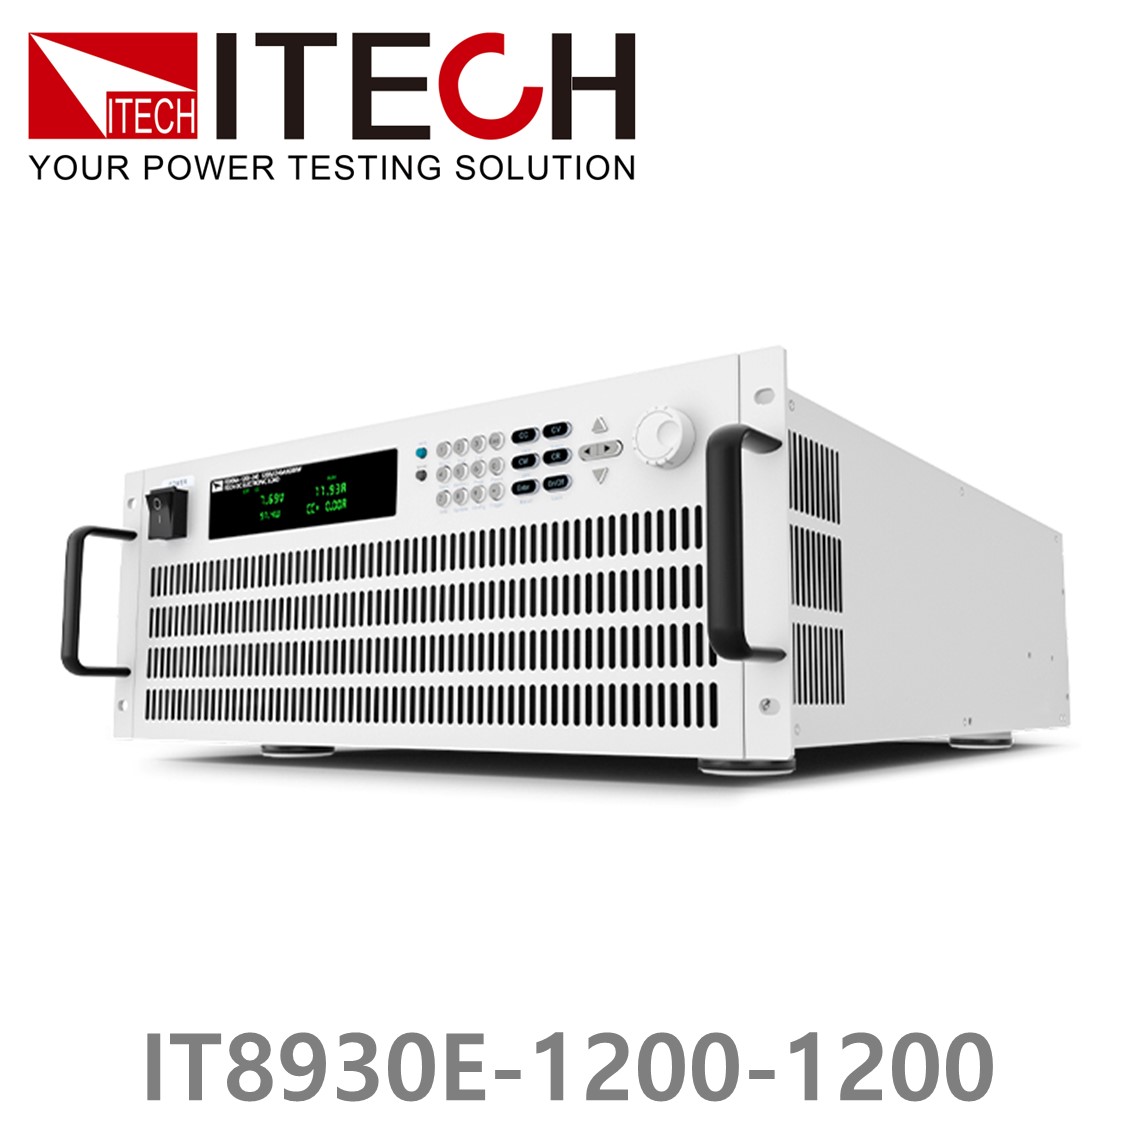 [ ITECH ] IT8930E-1200-1200  고성능 고전력 DC 전자로드 1200V/1200A/30kW (27U)